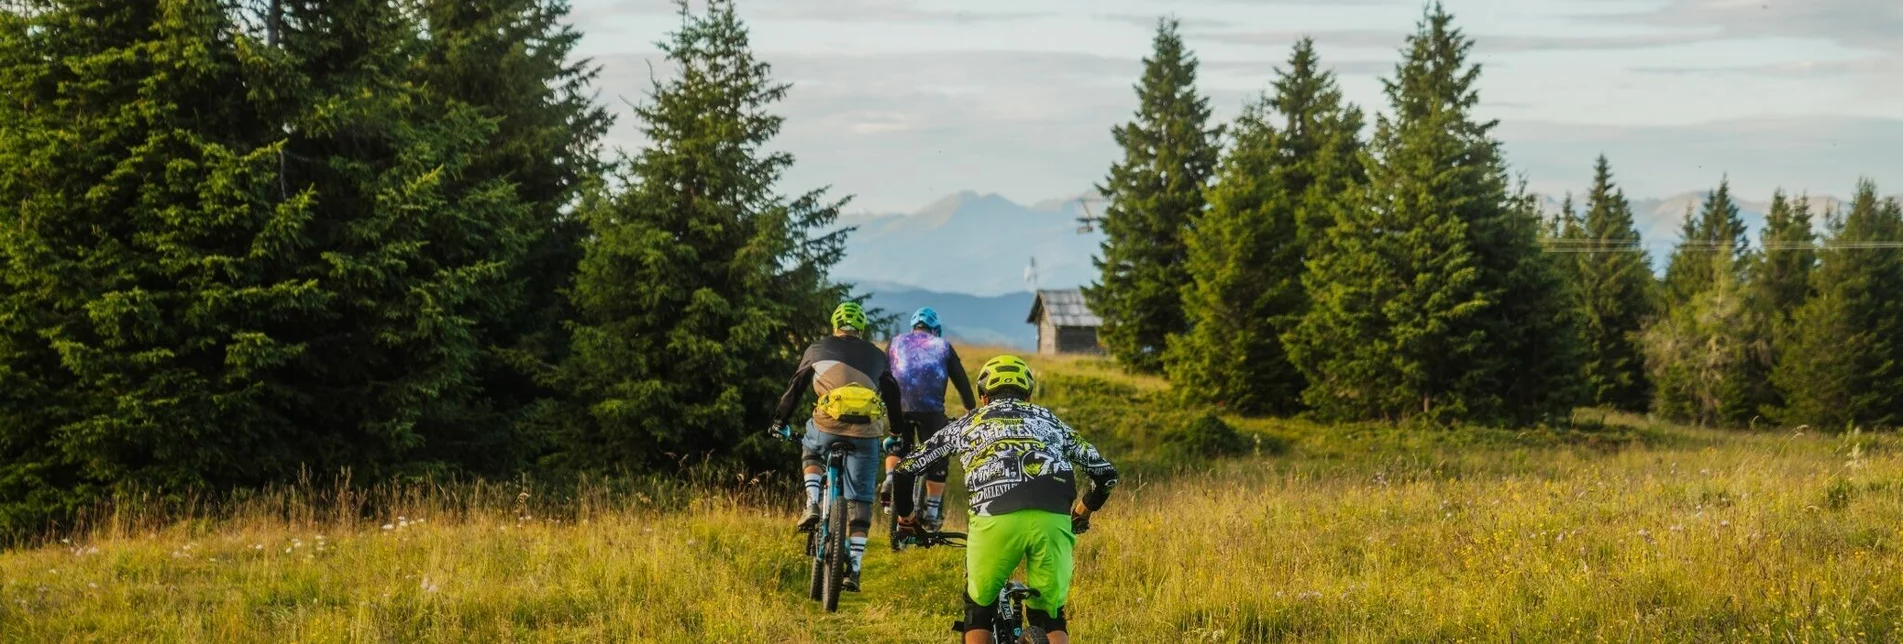 Mountainbike Grebenzen Höhentrail - Touren-Impression #1 | © Tourismusverband Region Murau